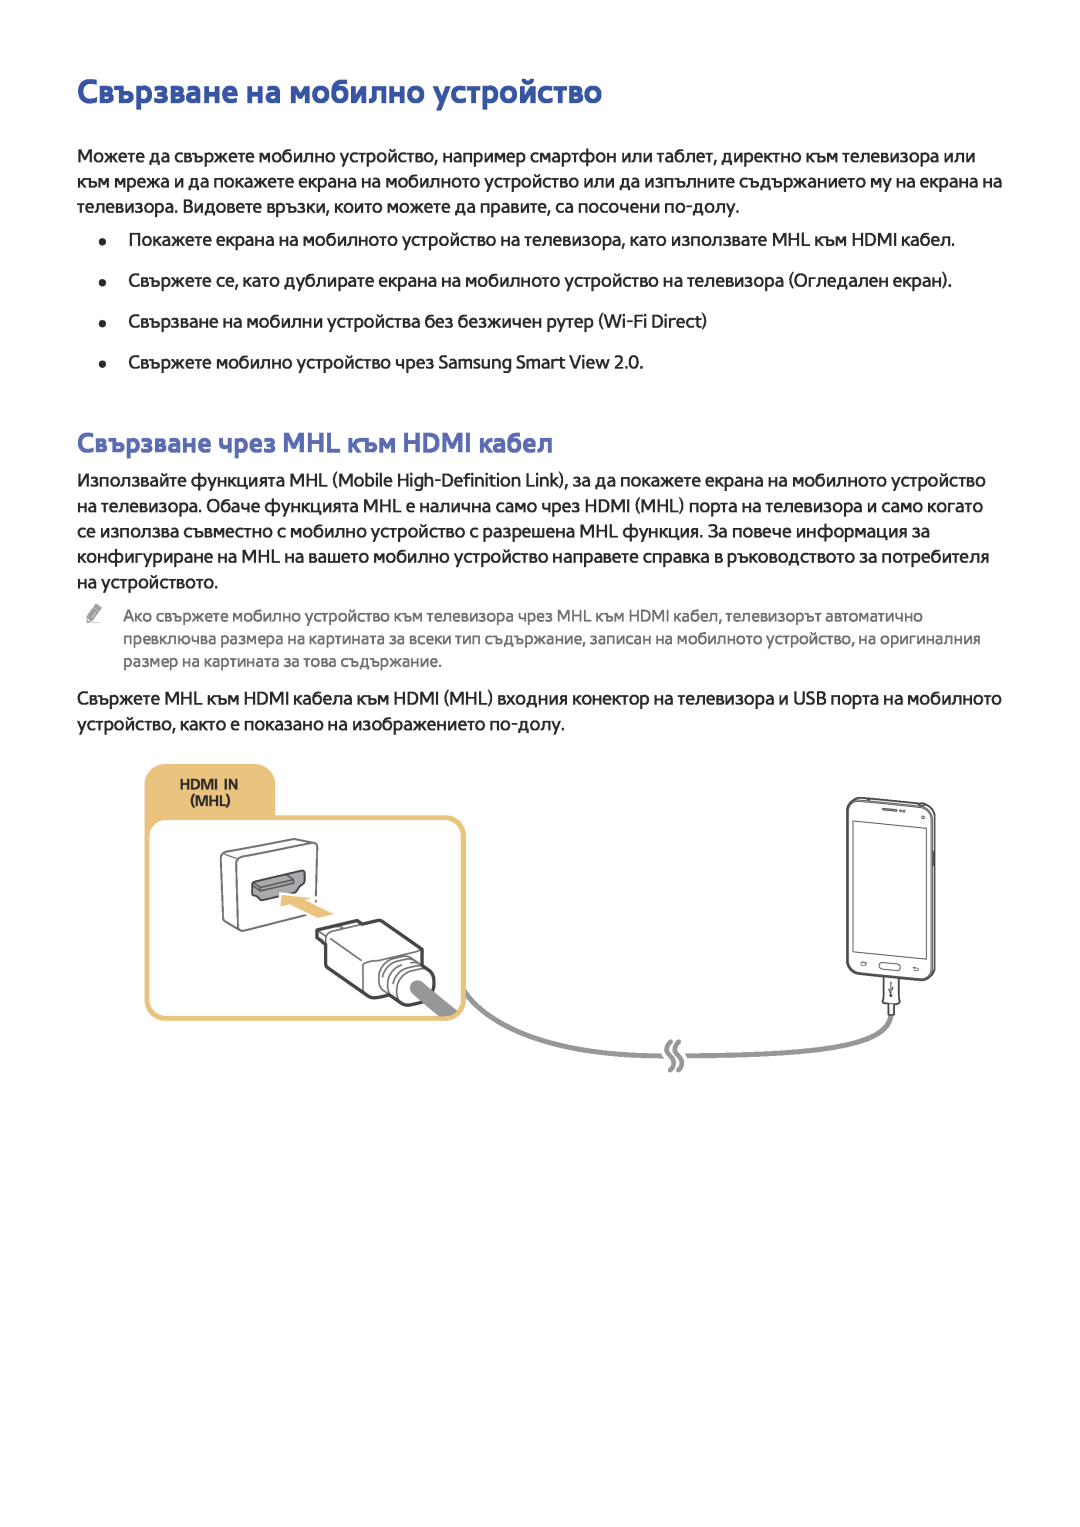 Samsung UE40JU6510SXXH, UE55JU6400WXXH, UE48JU7500LXXH Свързване на мобилно устройство, Свързване чрез MHL към HDMI кабел 